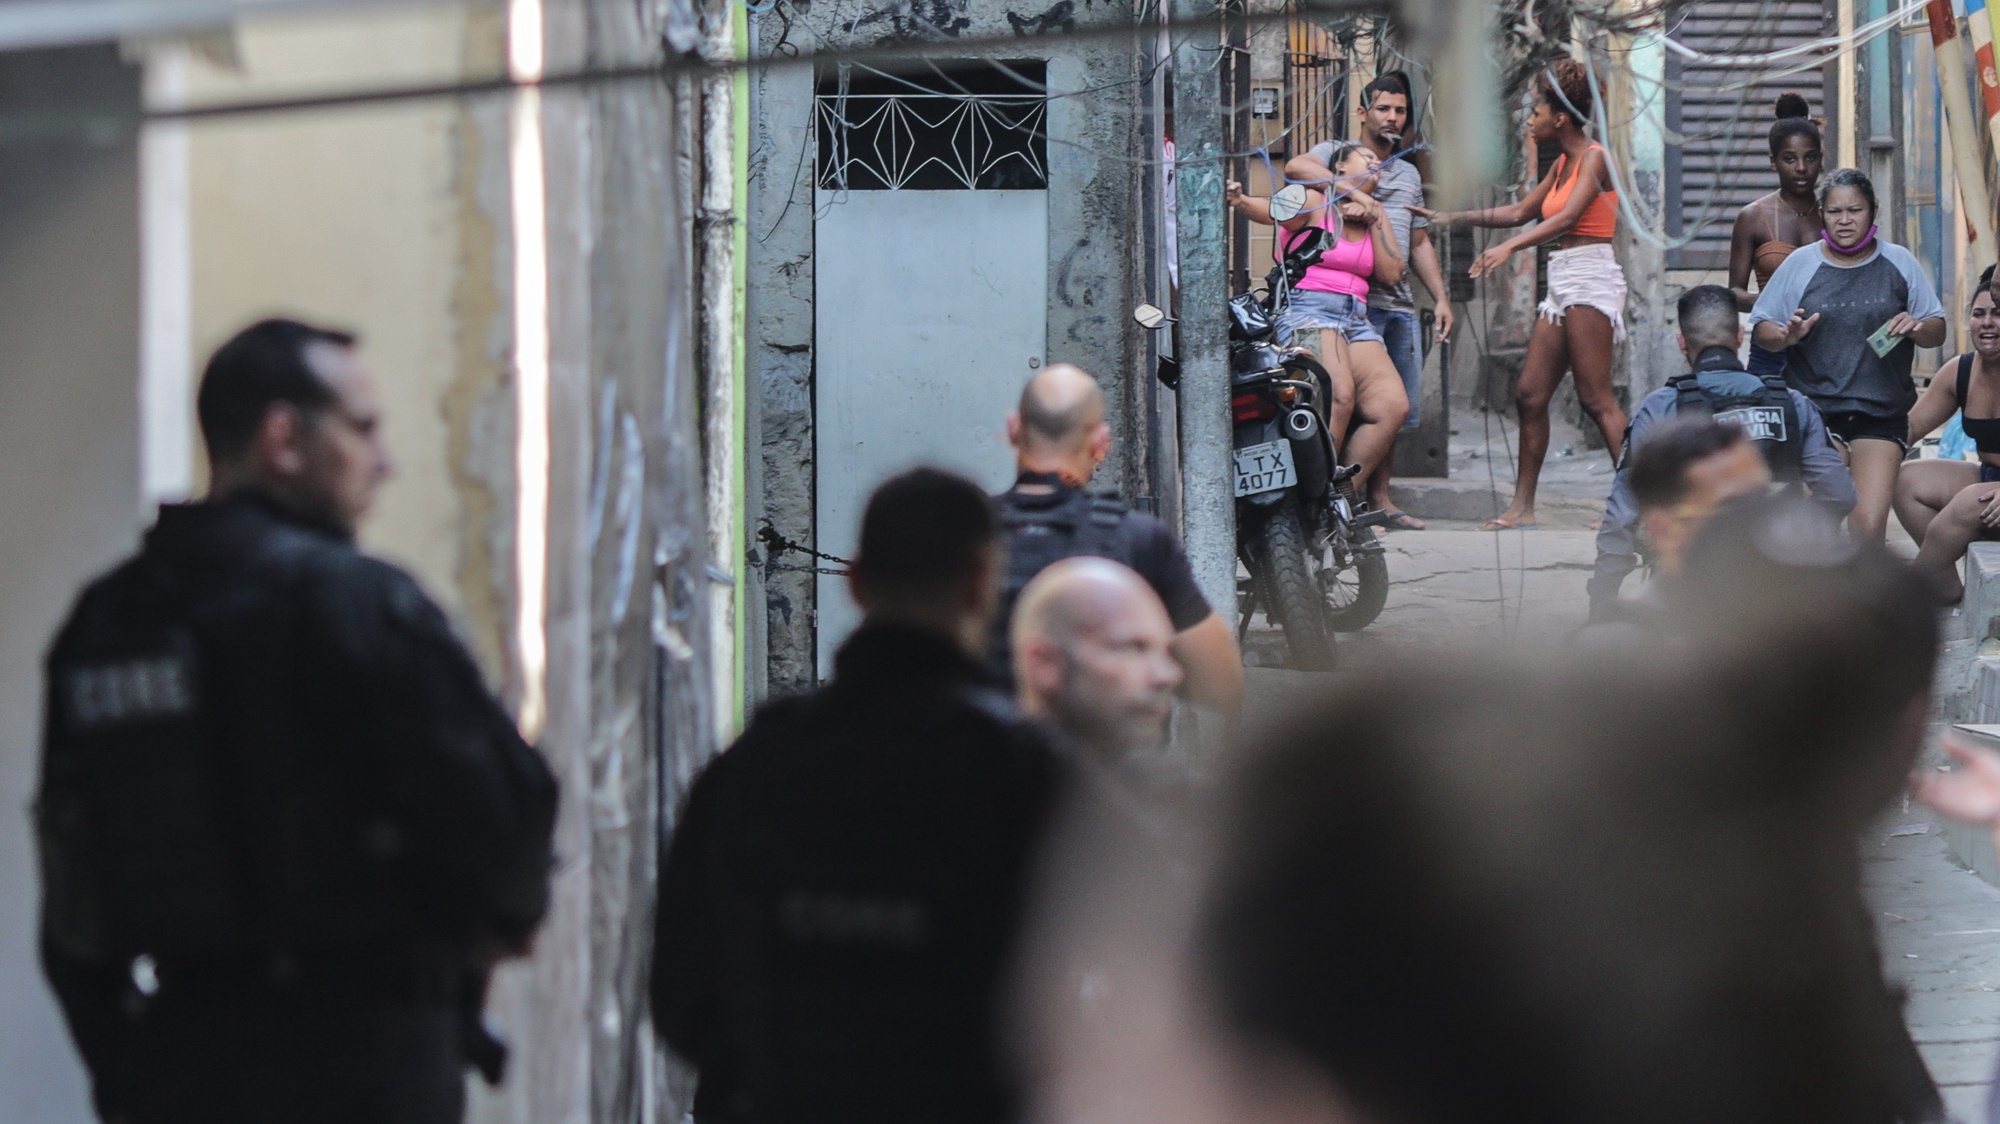 Membros da Polícia levam a cabo uma operação contra um gang numa favela no Brasil